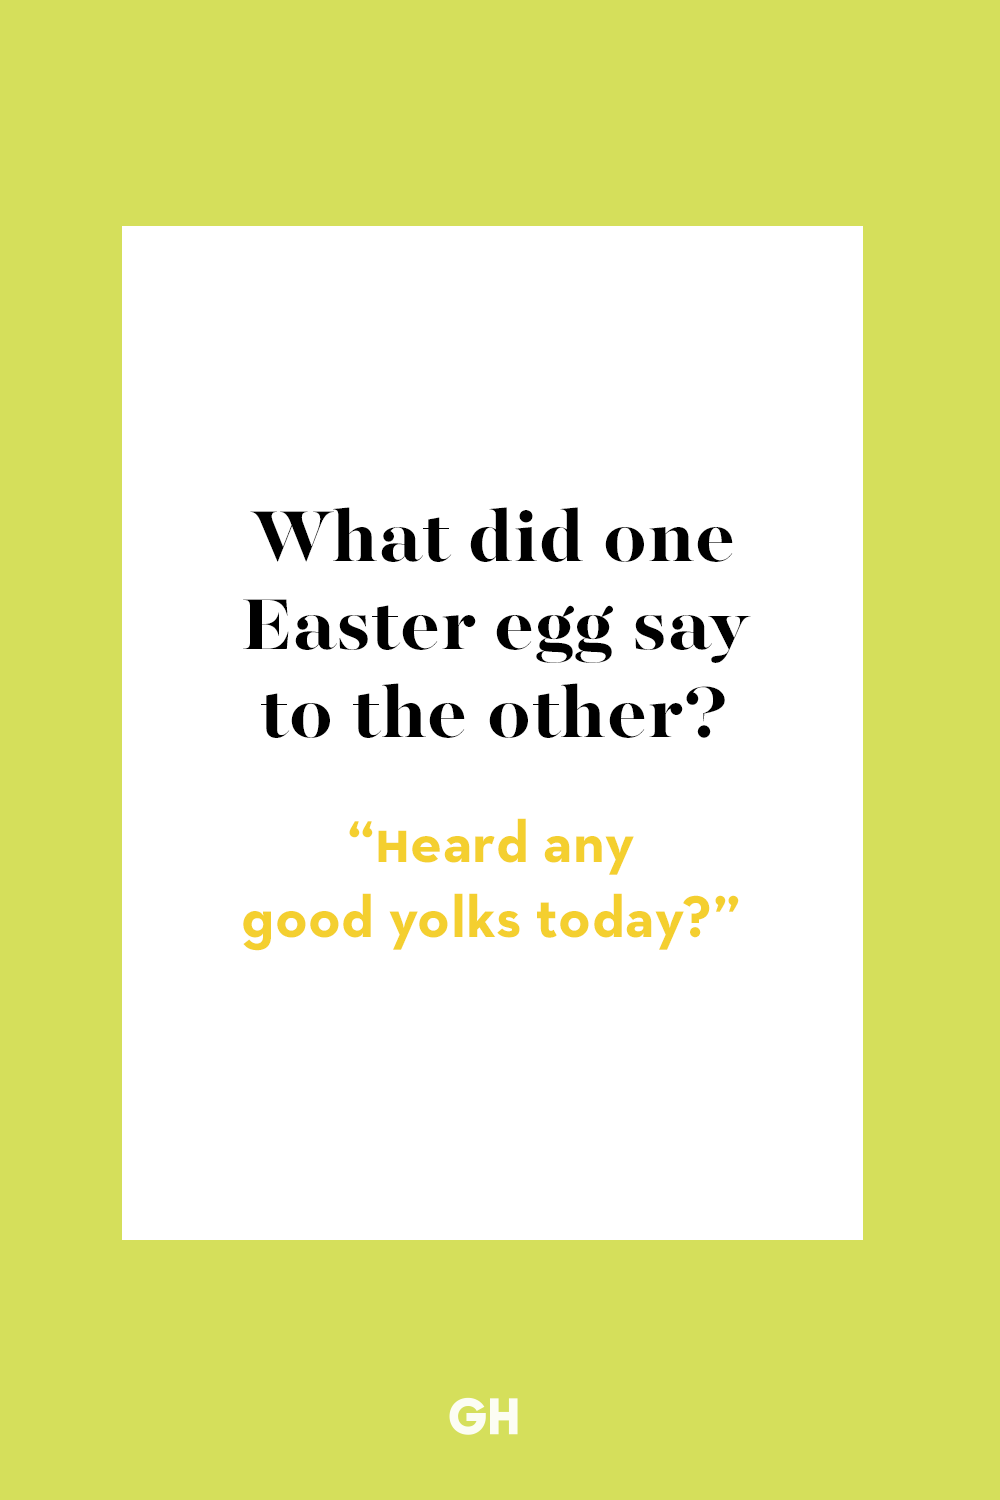 easter egg jokes